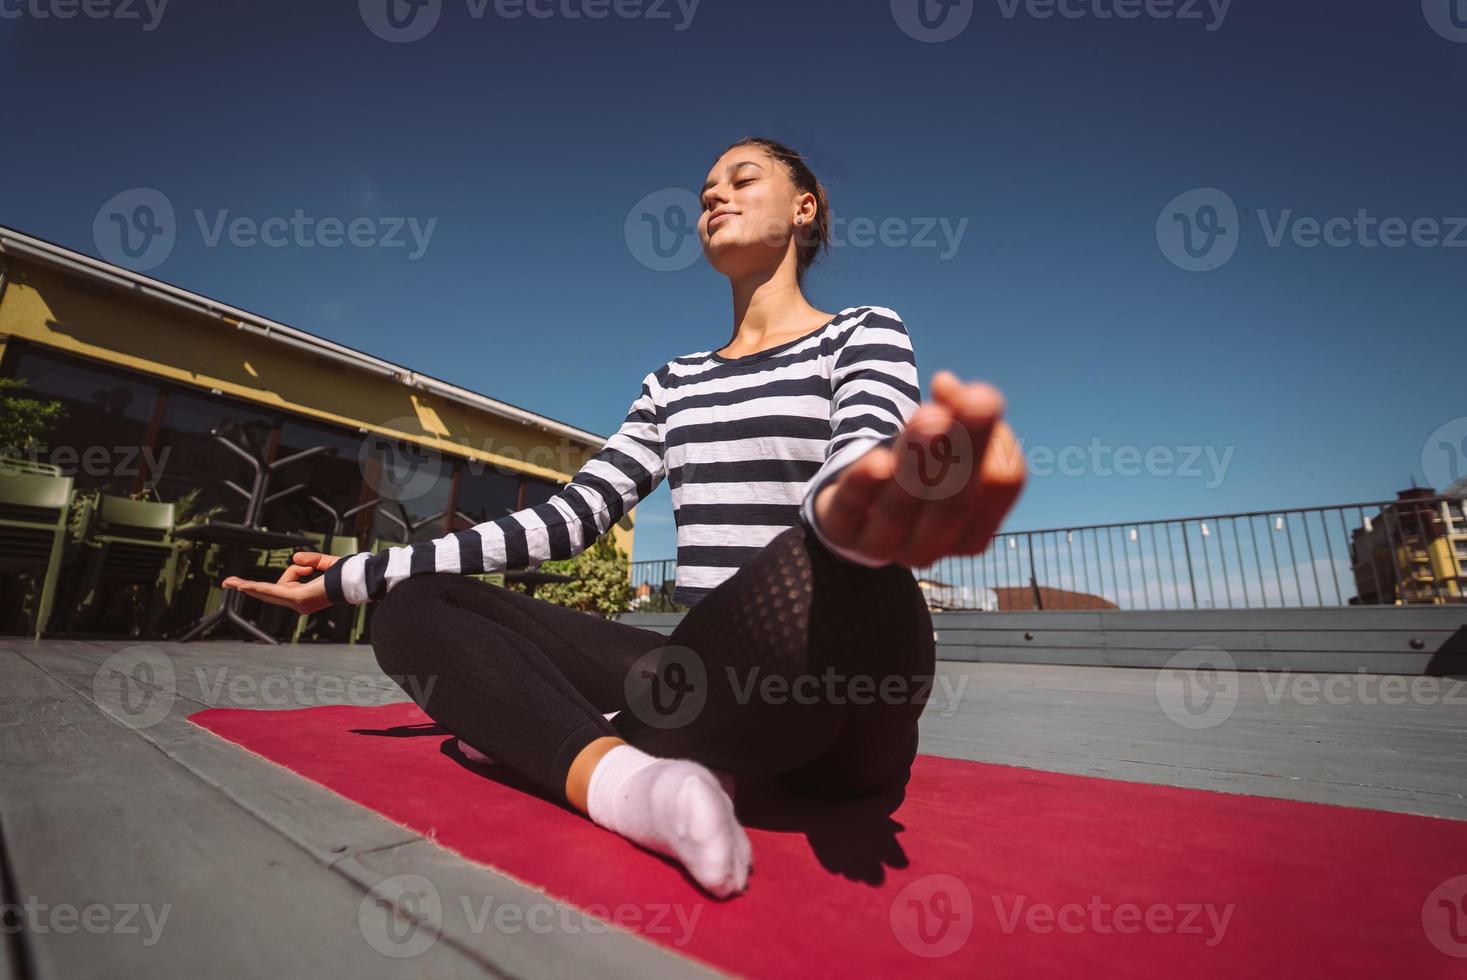 jovem meditando em pose de lótus no telhado do edifício foto